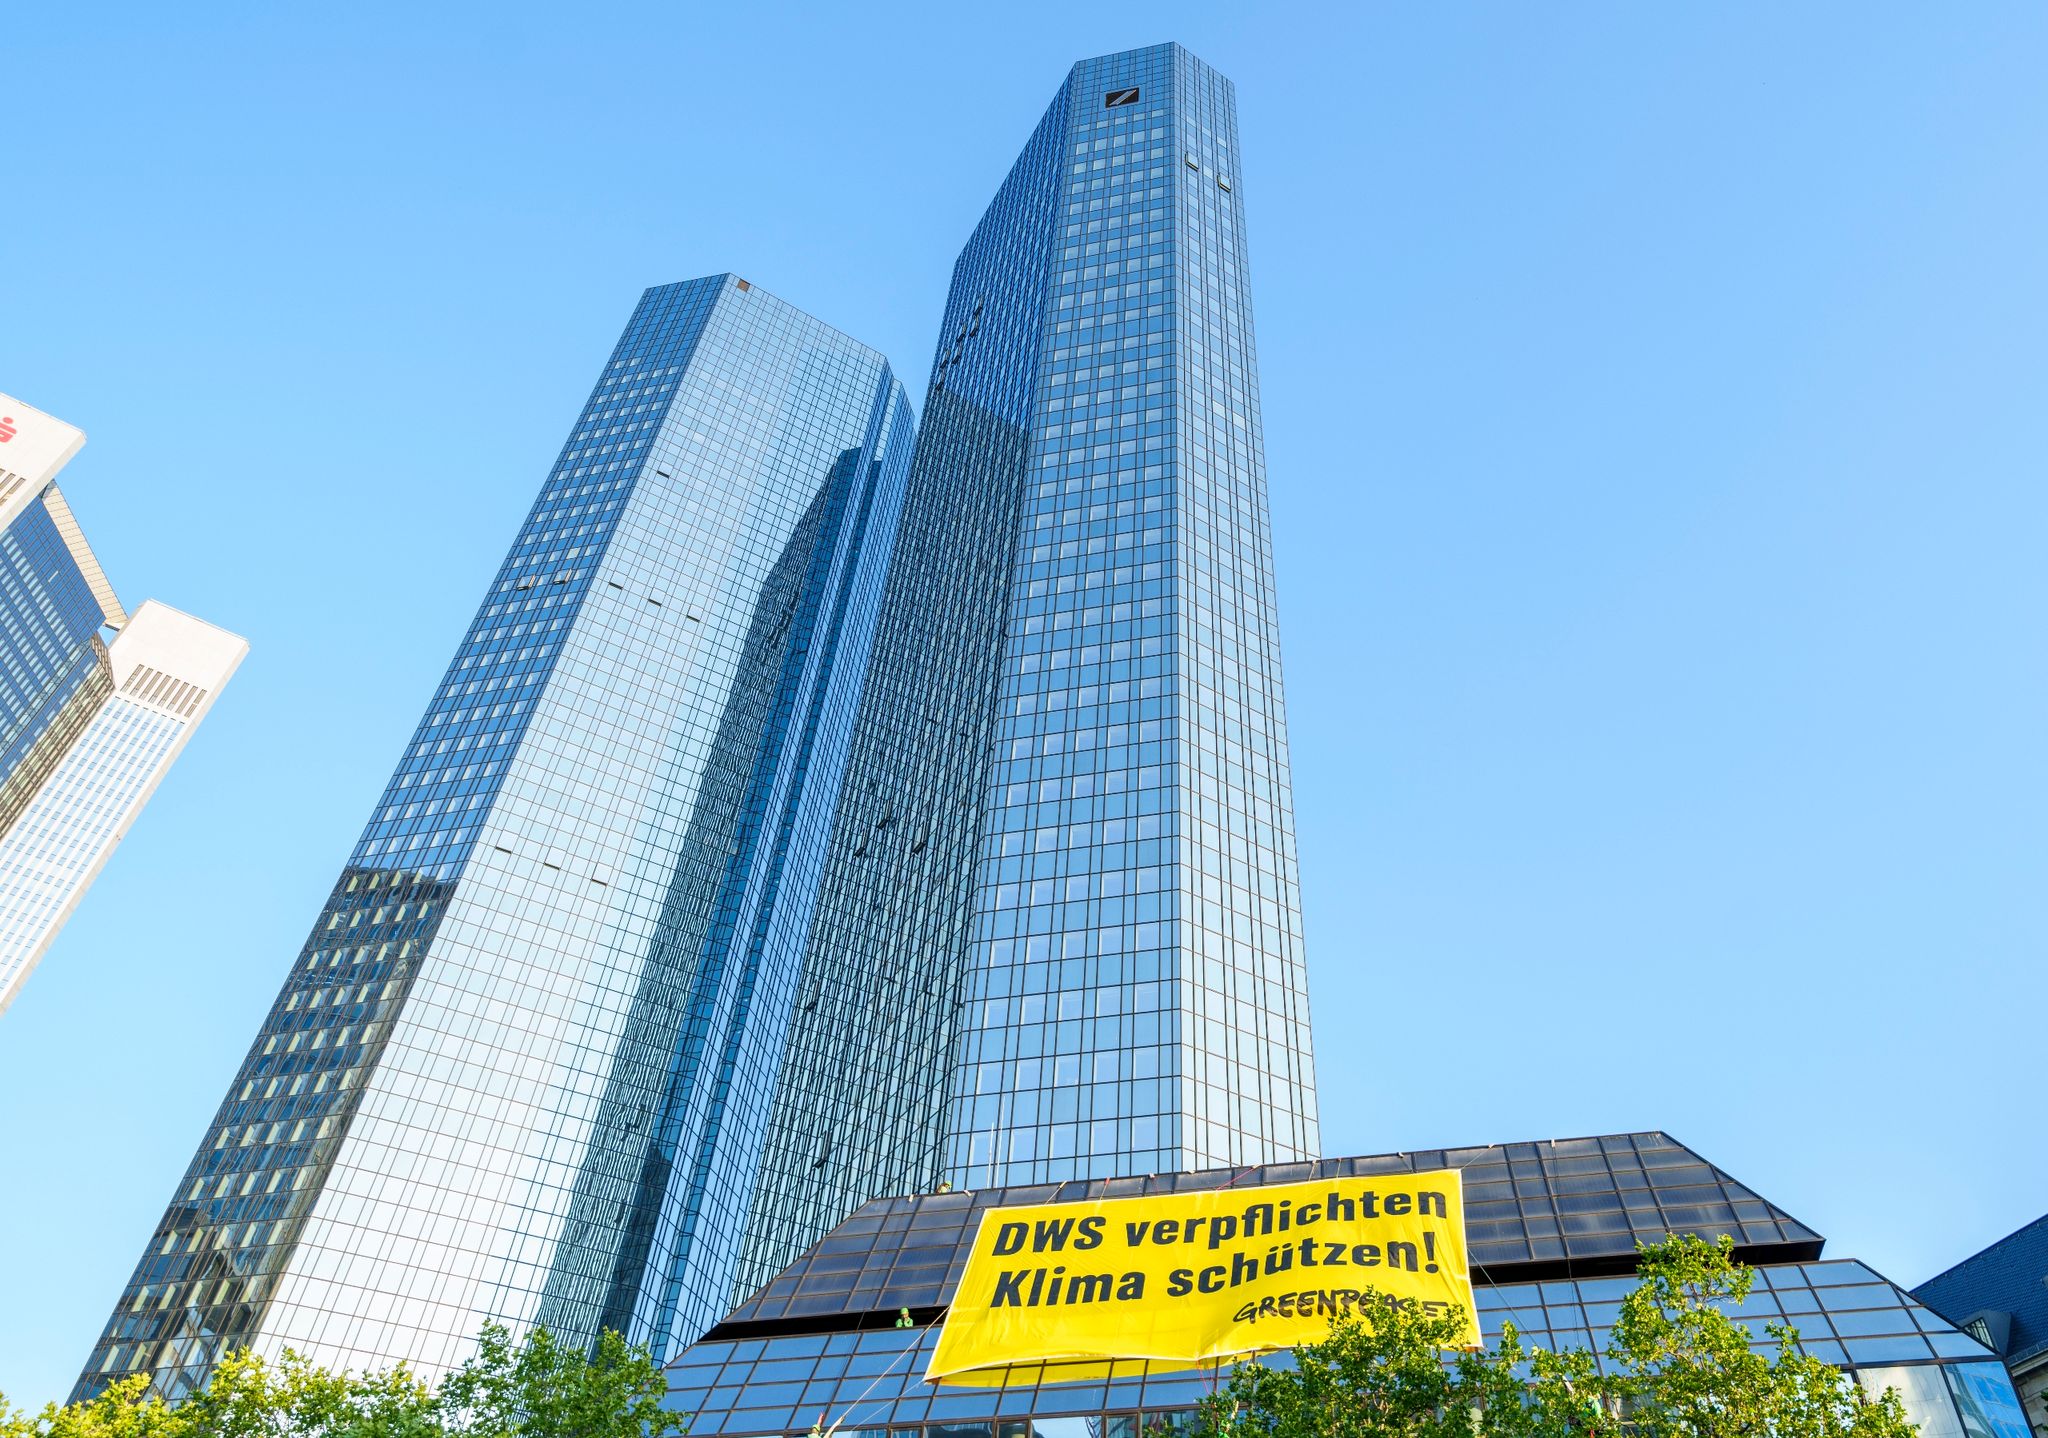 Ein Greenpeace-Banner „DWS verpflichten Klima schützen!“ hängt an einem Gebäude der Deutschen Bank.